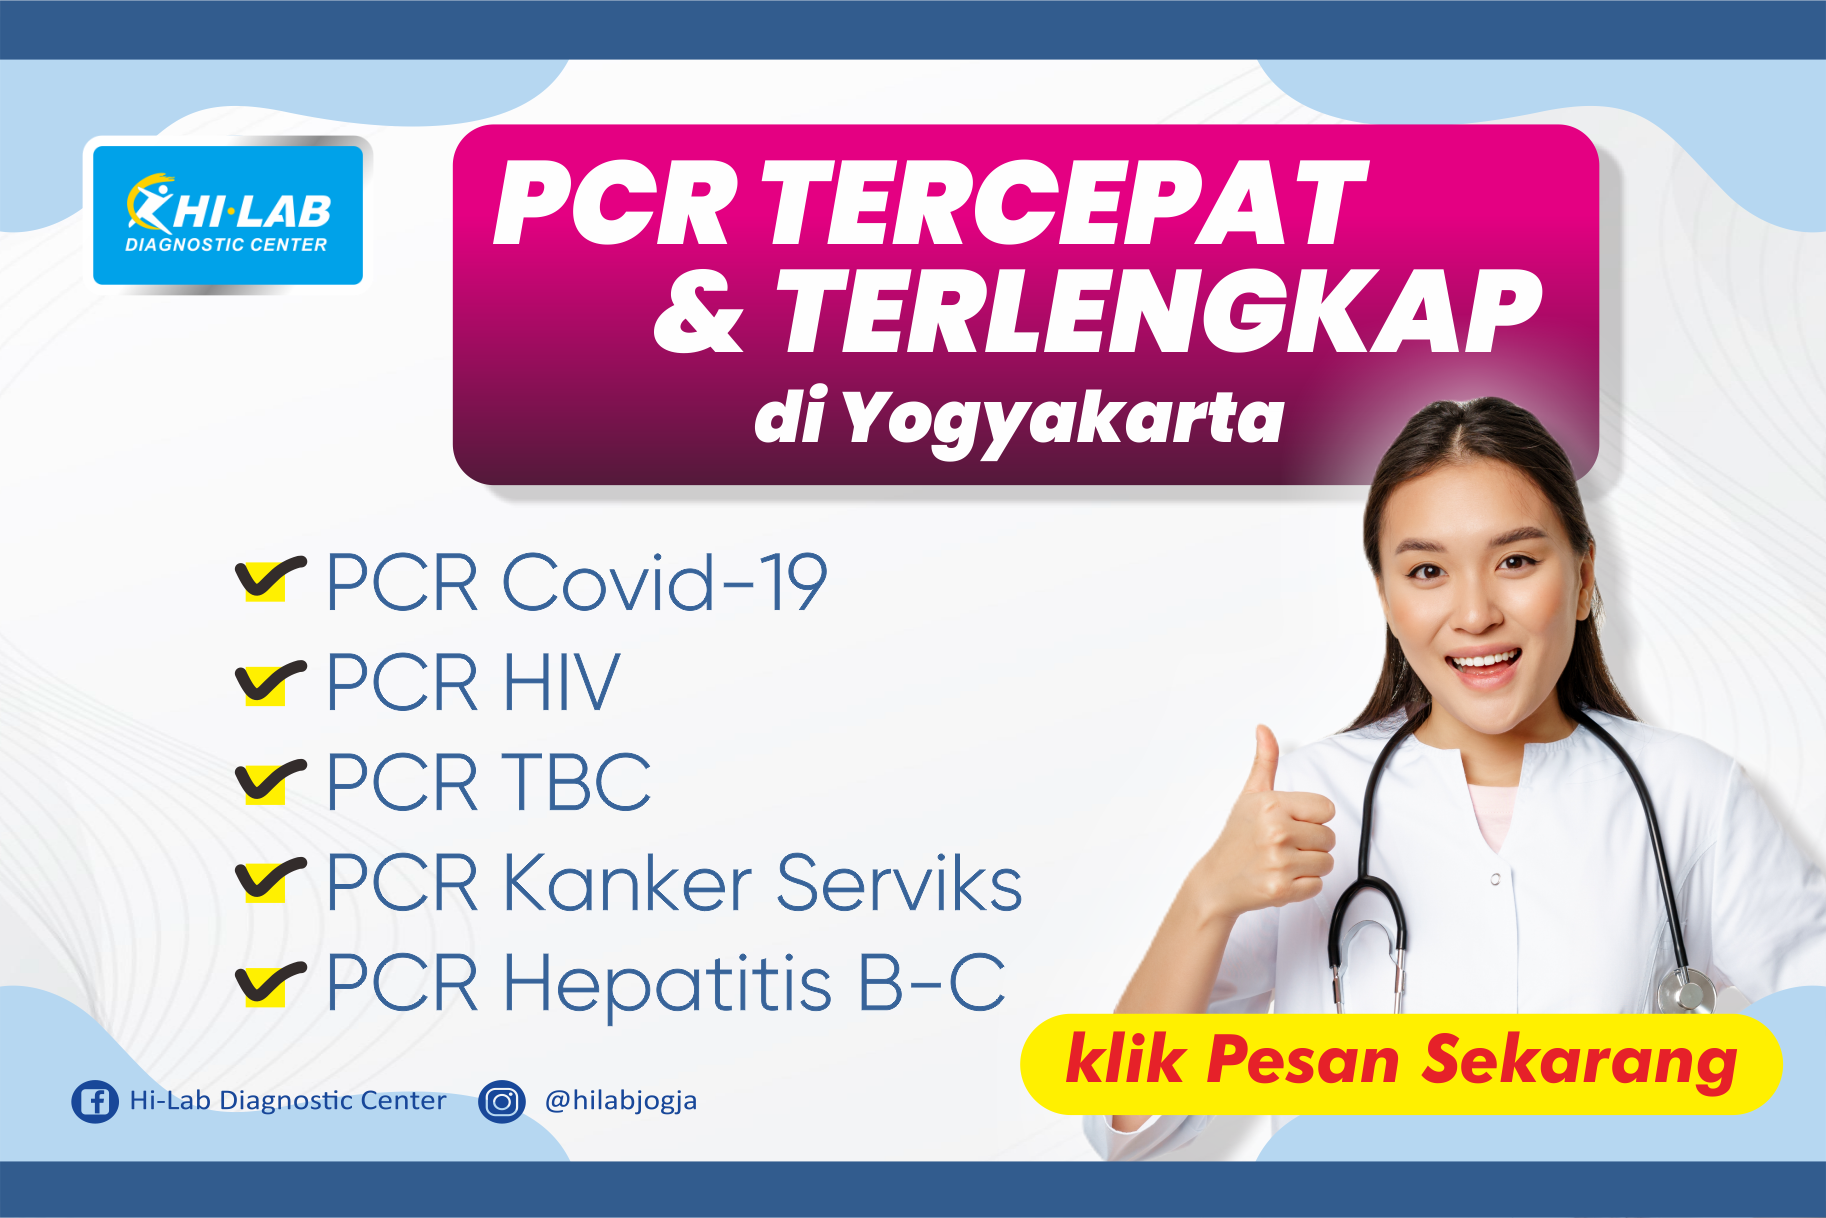 PCR TERCEPAT & TERLENGKAP